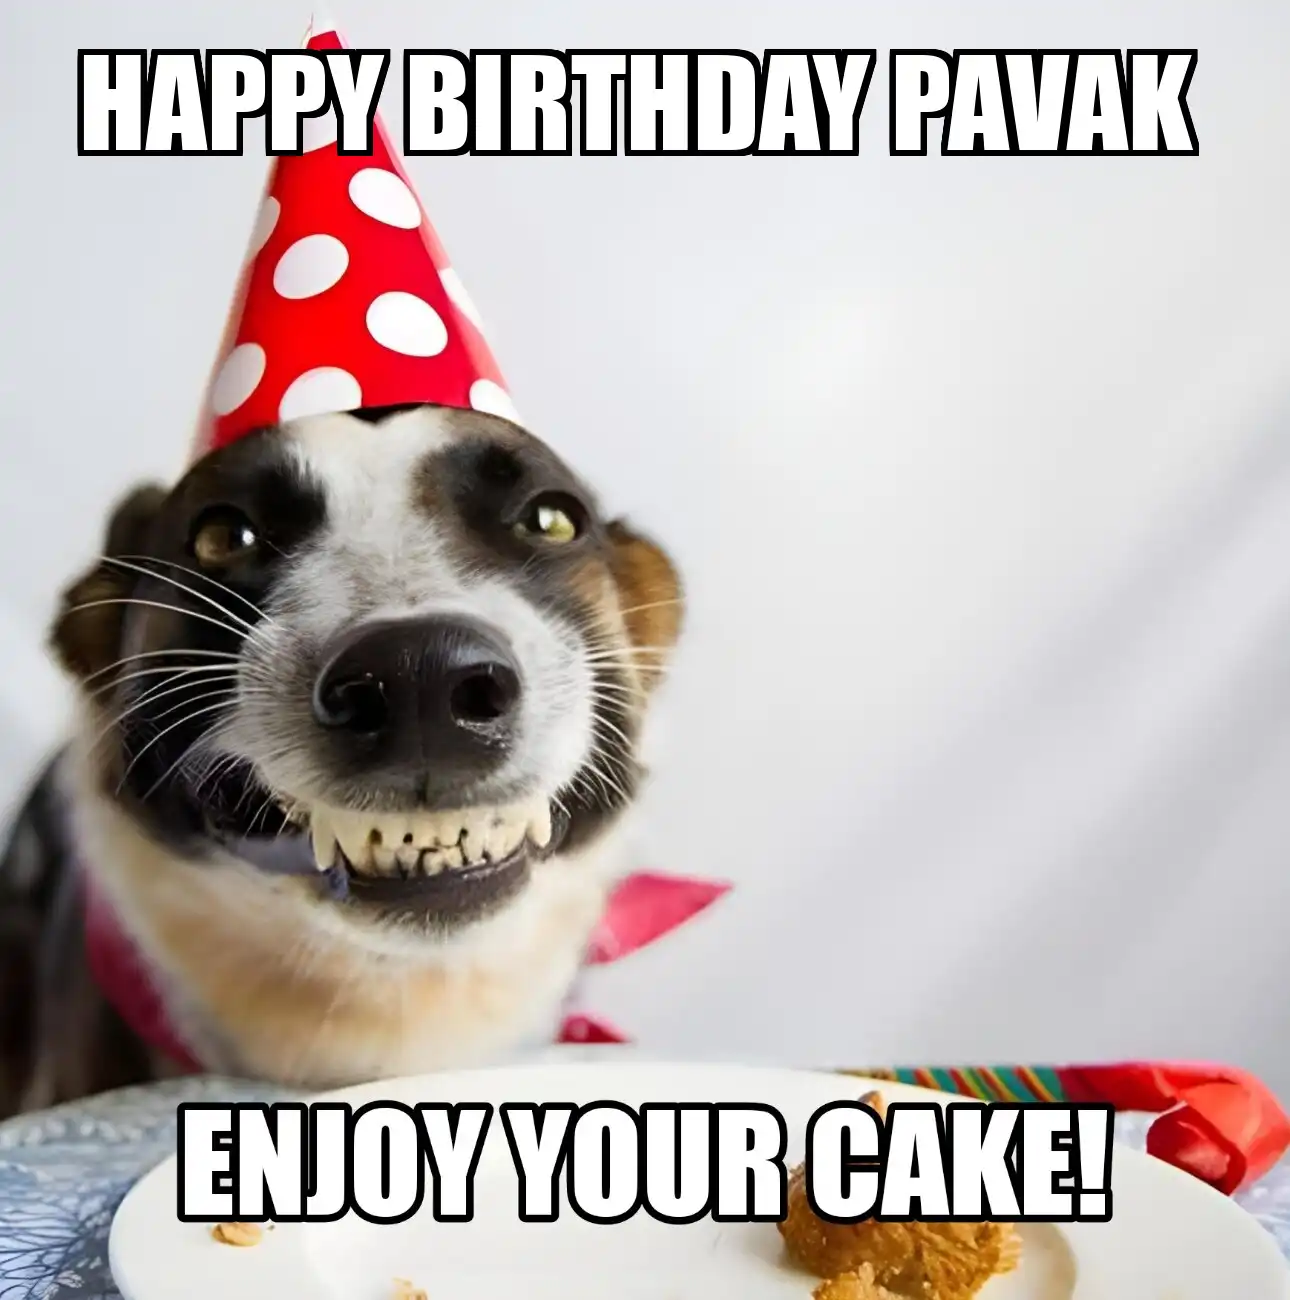 Happy Birthday Pavak Enjoy Your Cake Dog Meme